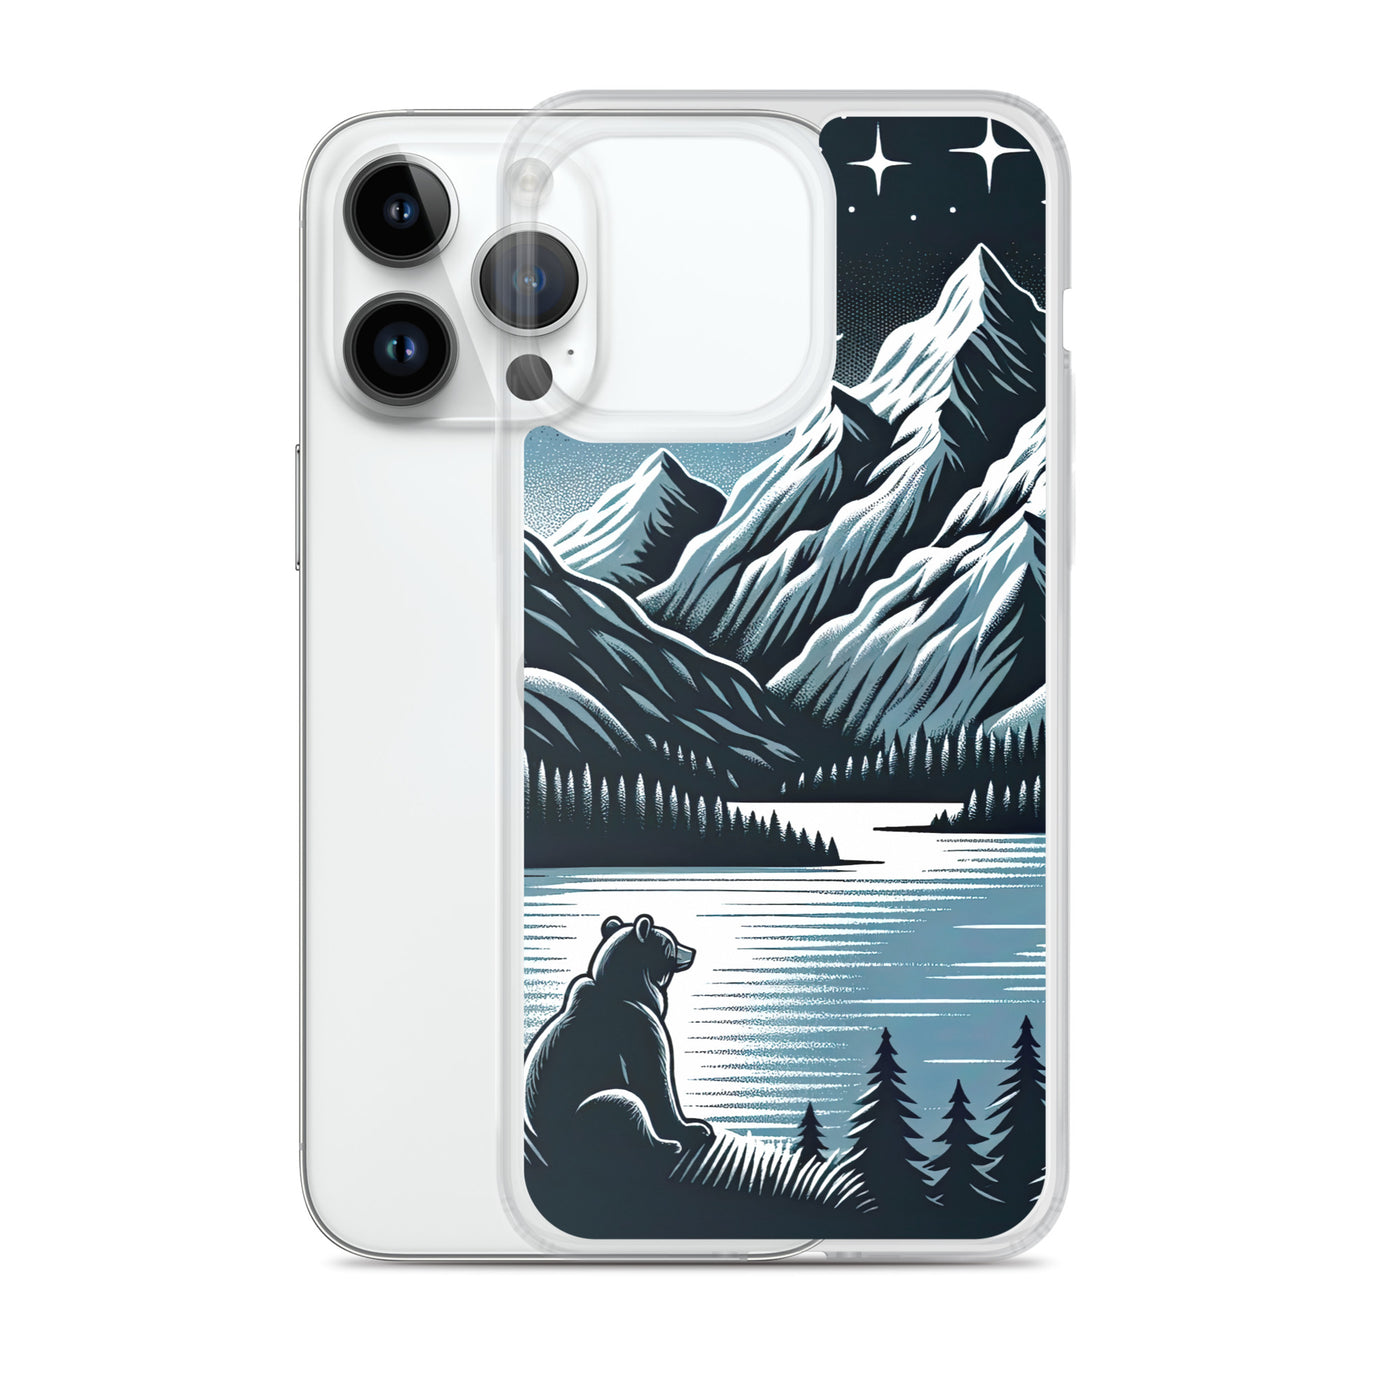 Bär in Alpen-Mondnacht, silberne Berge, schimmernde Seen - iPhone Schutzhülle (durchsichtig) camping xxx yyy zzz